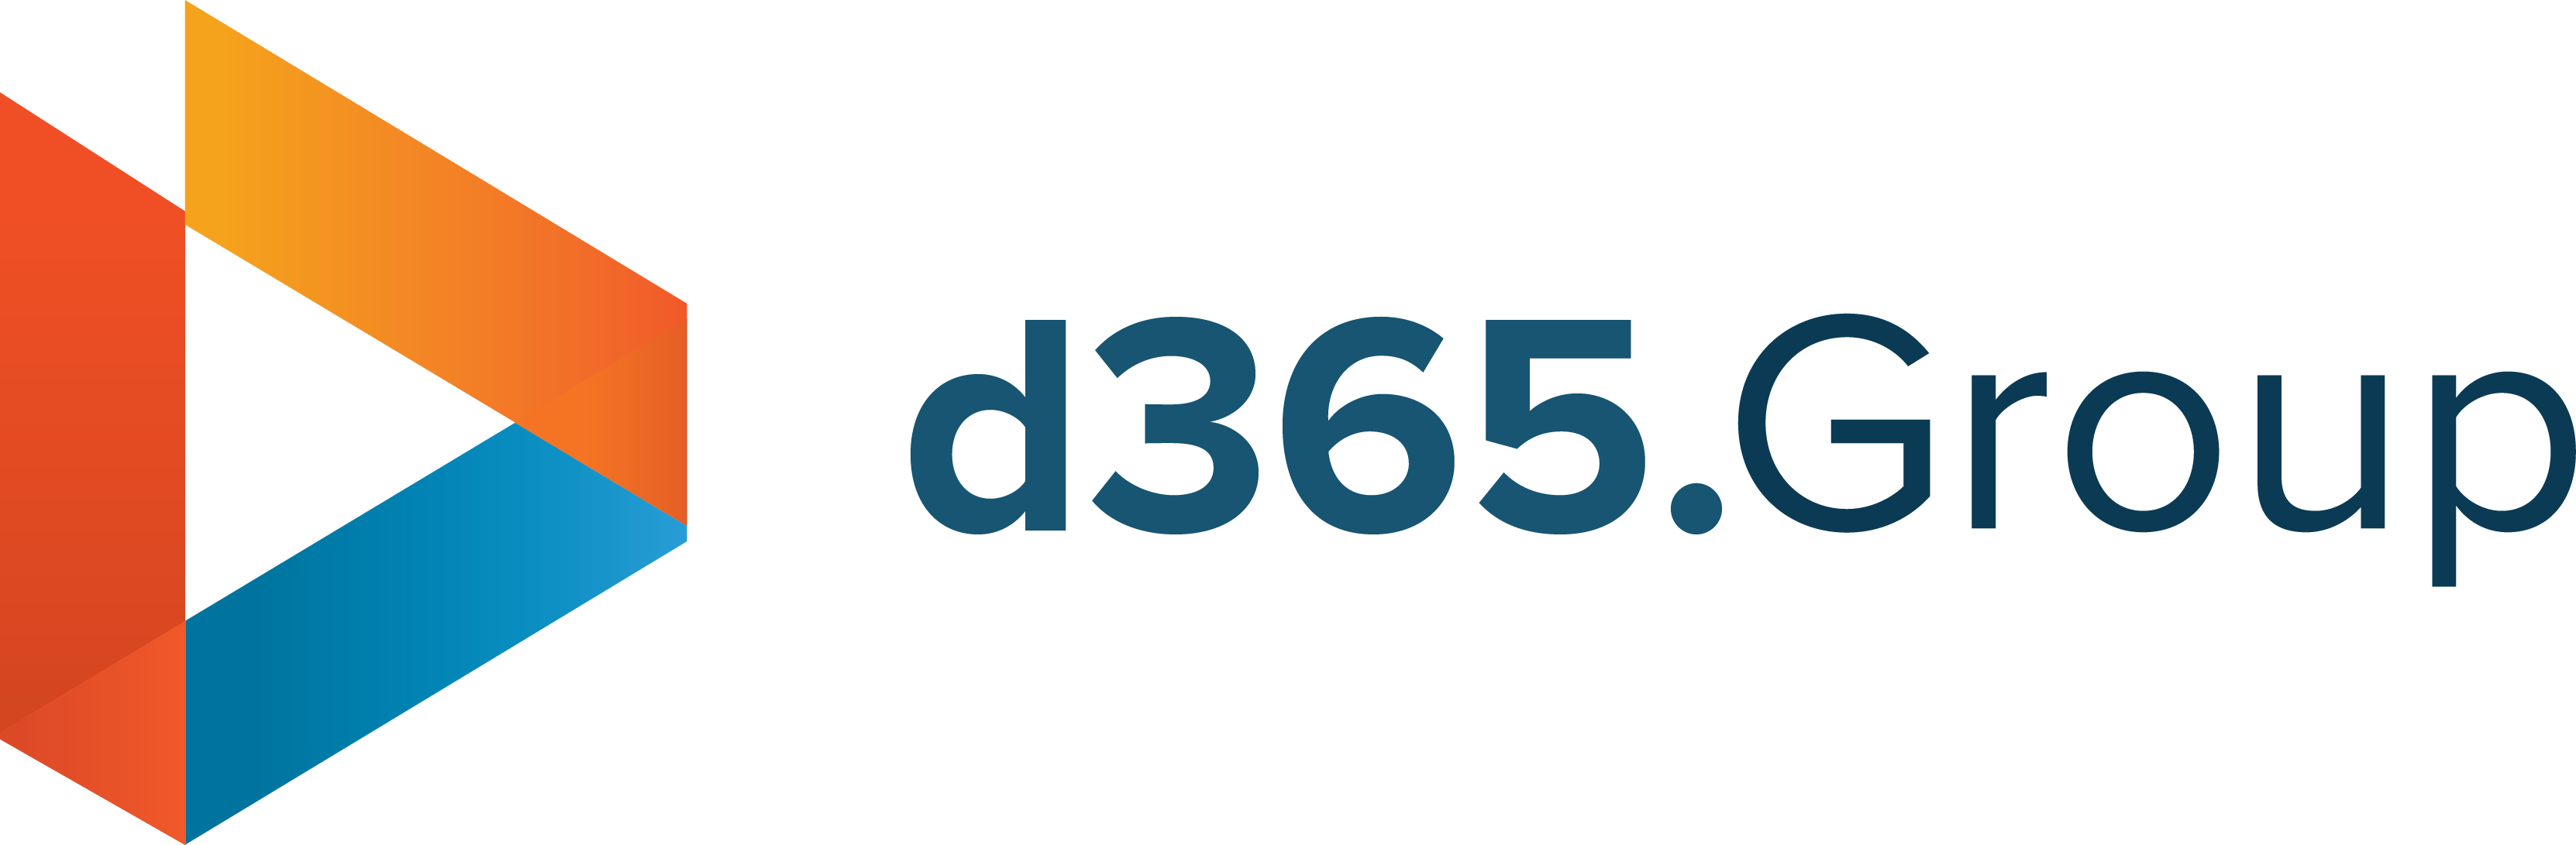 Dynamics 365 Group Logo